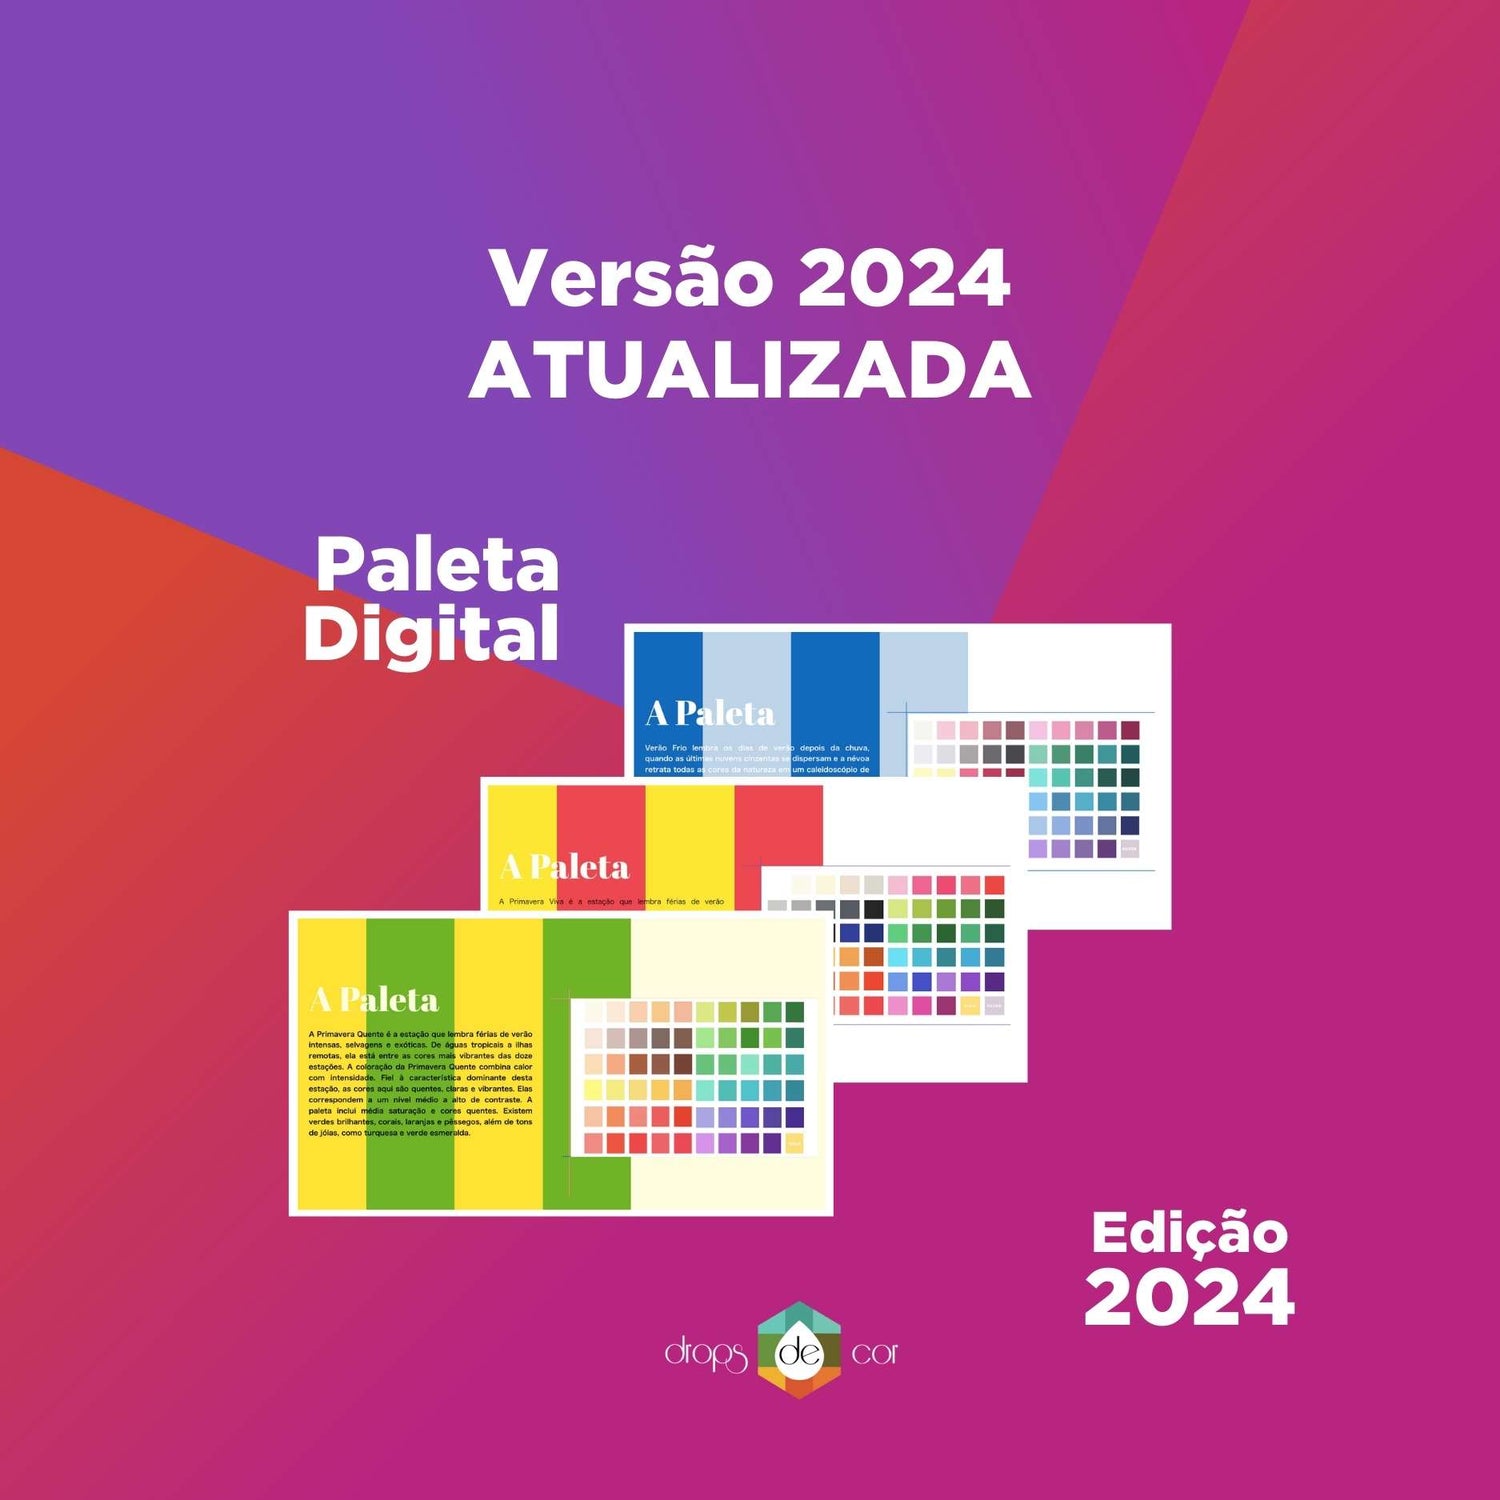 Dossiê Digital Sazonal- Primavera Clara - Edição 2024